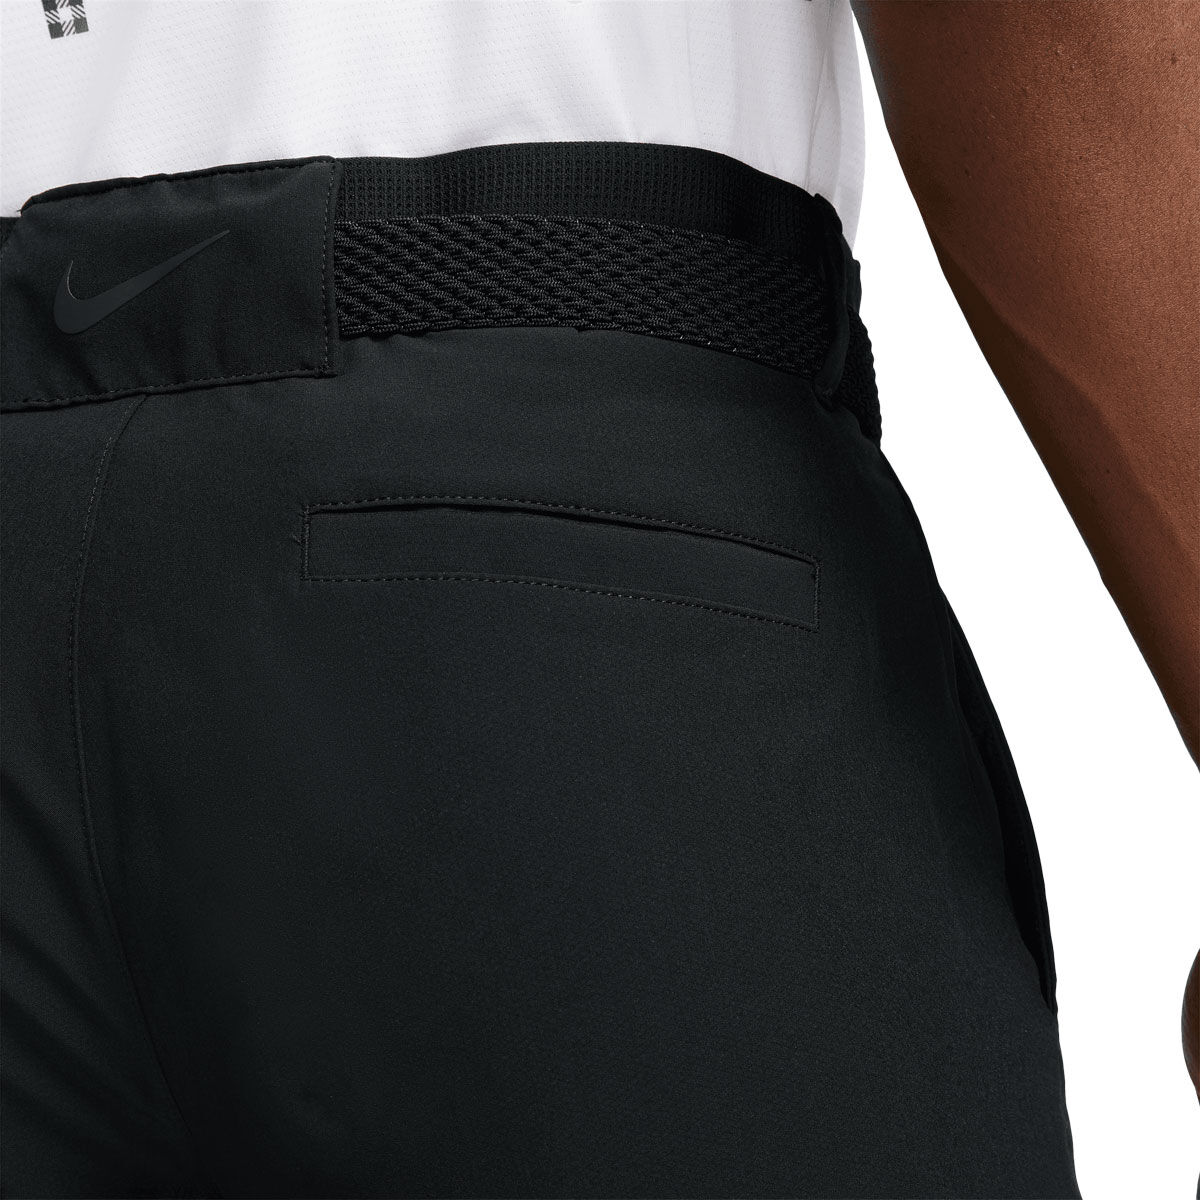 Nike Flex Women's Golf Pants in Gray | Lyst